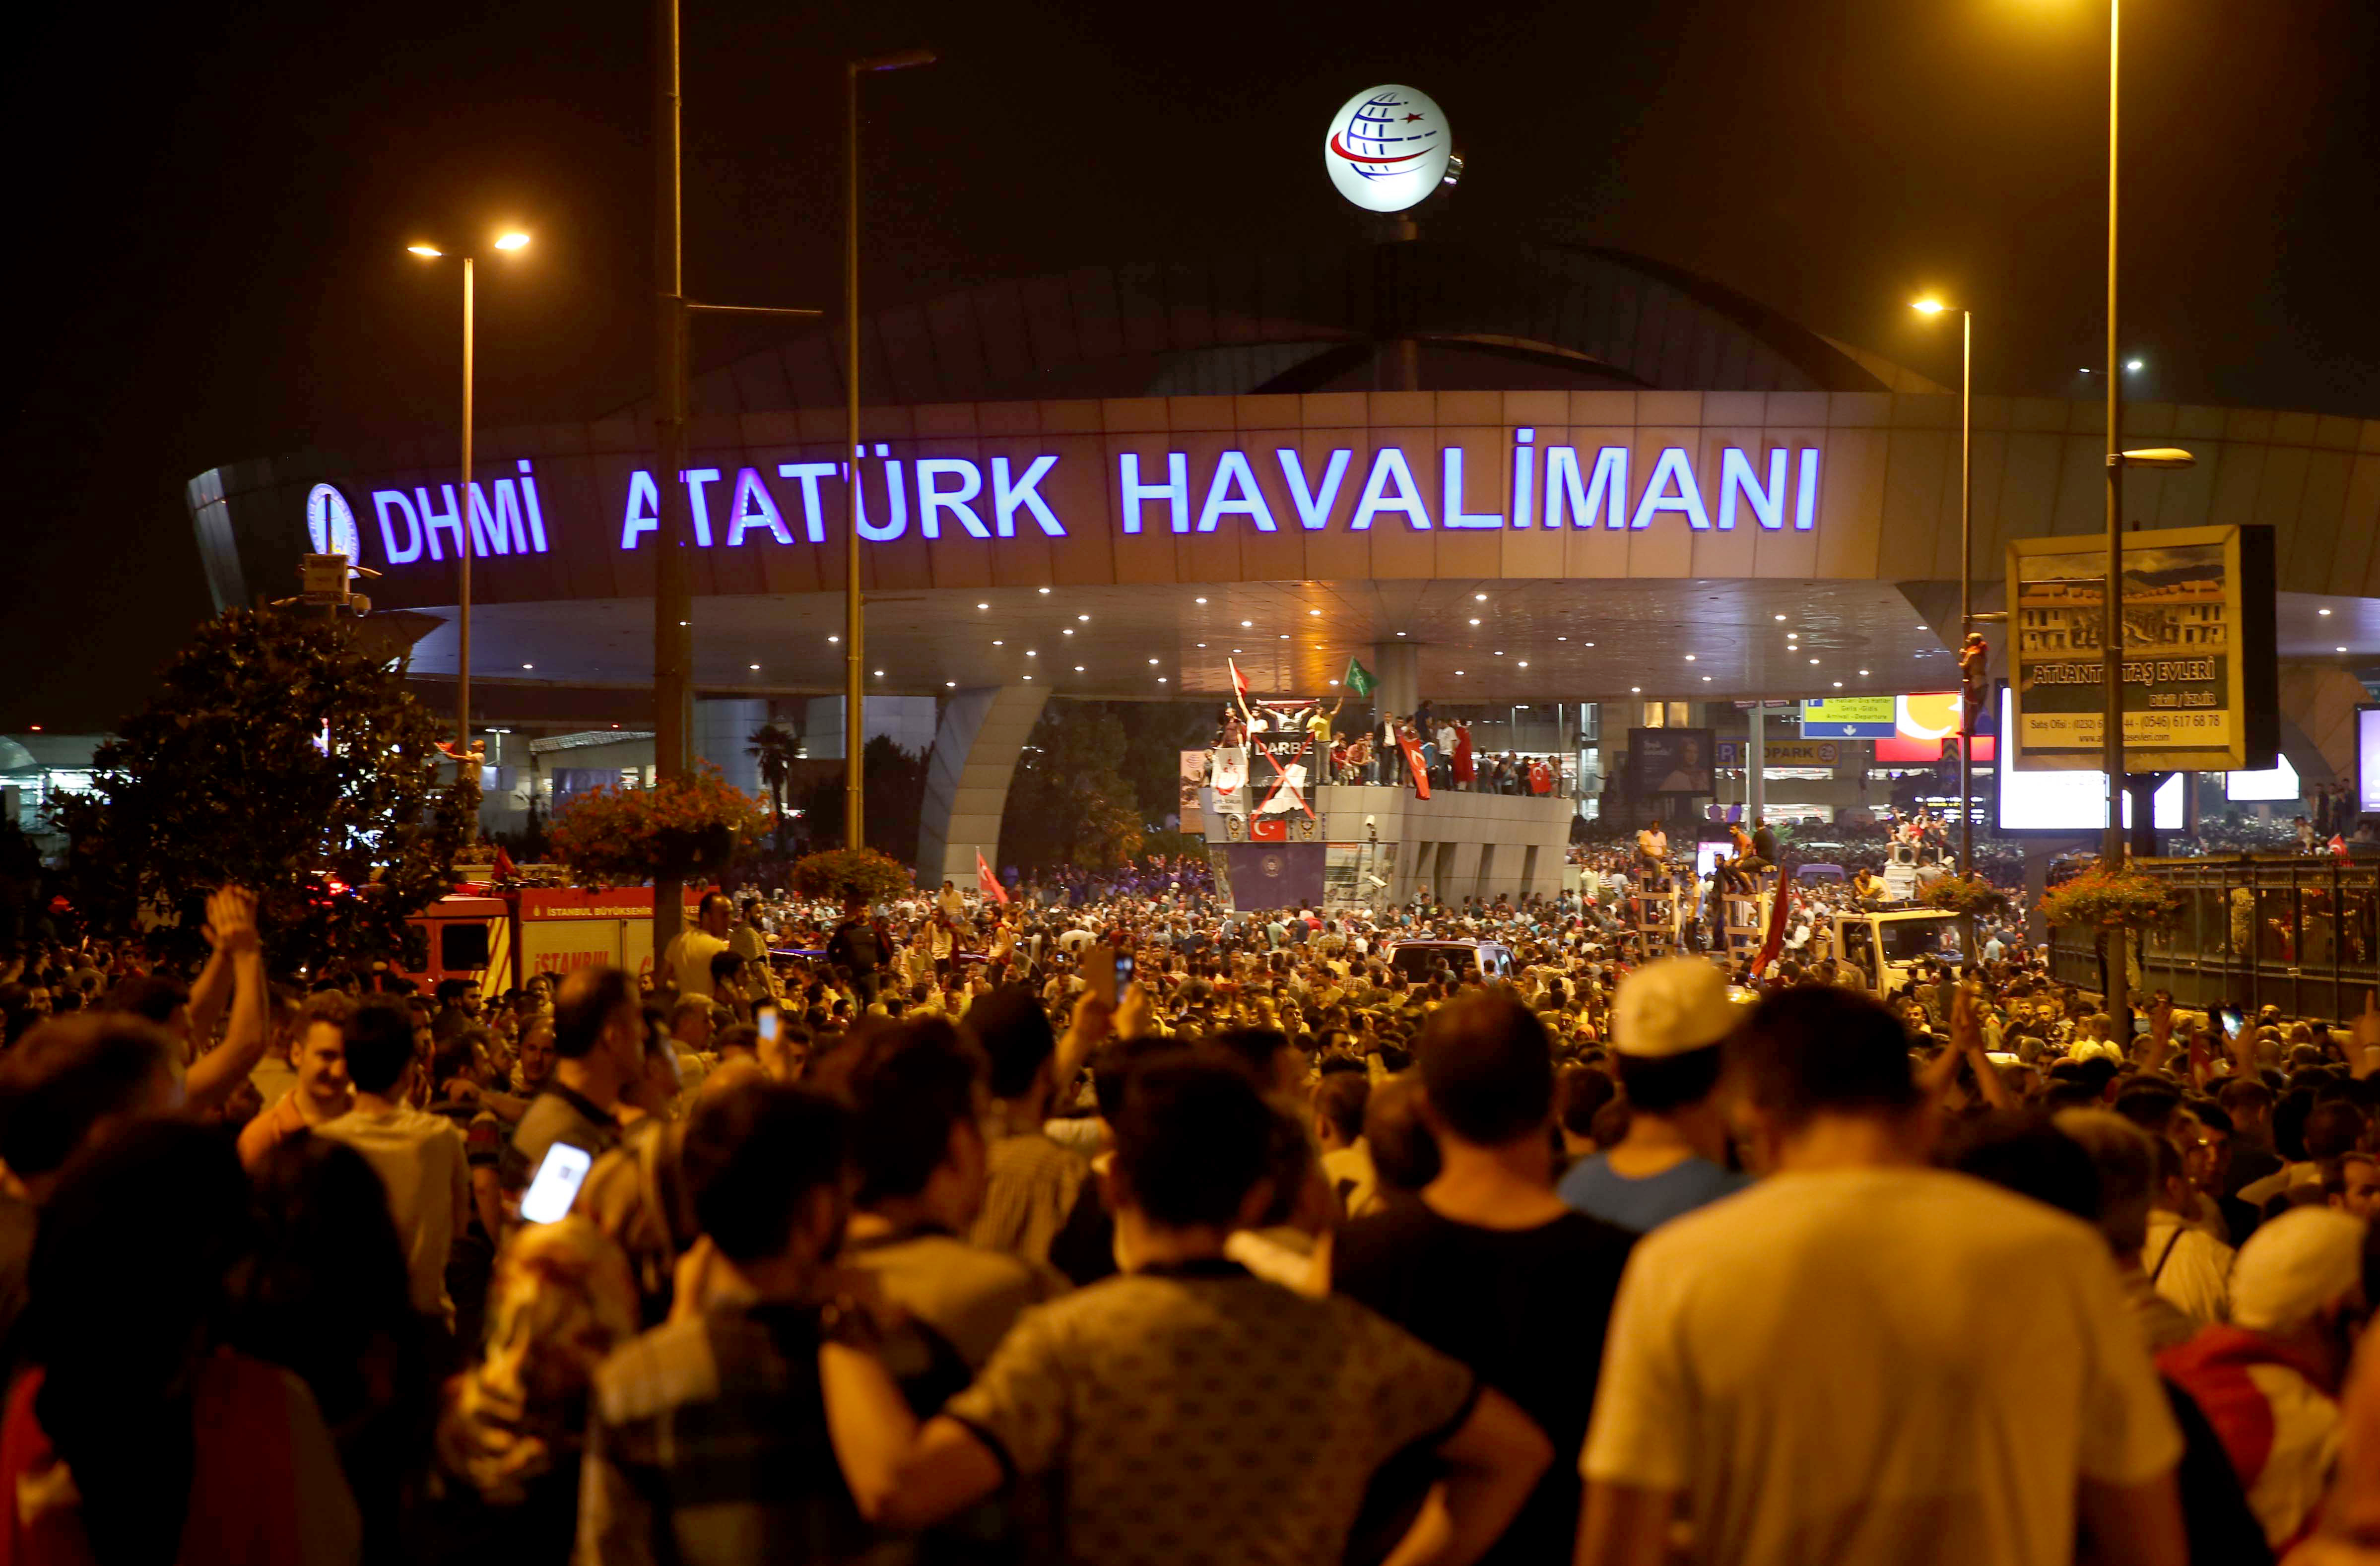 قام ألاف الأشخاص بعمل مسيرة نحو مطار أتاتورك عقب نداء رئيس الجمهورية رجب طيب أردوغان.